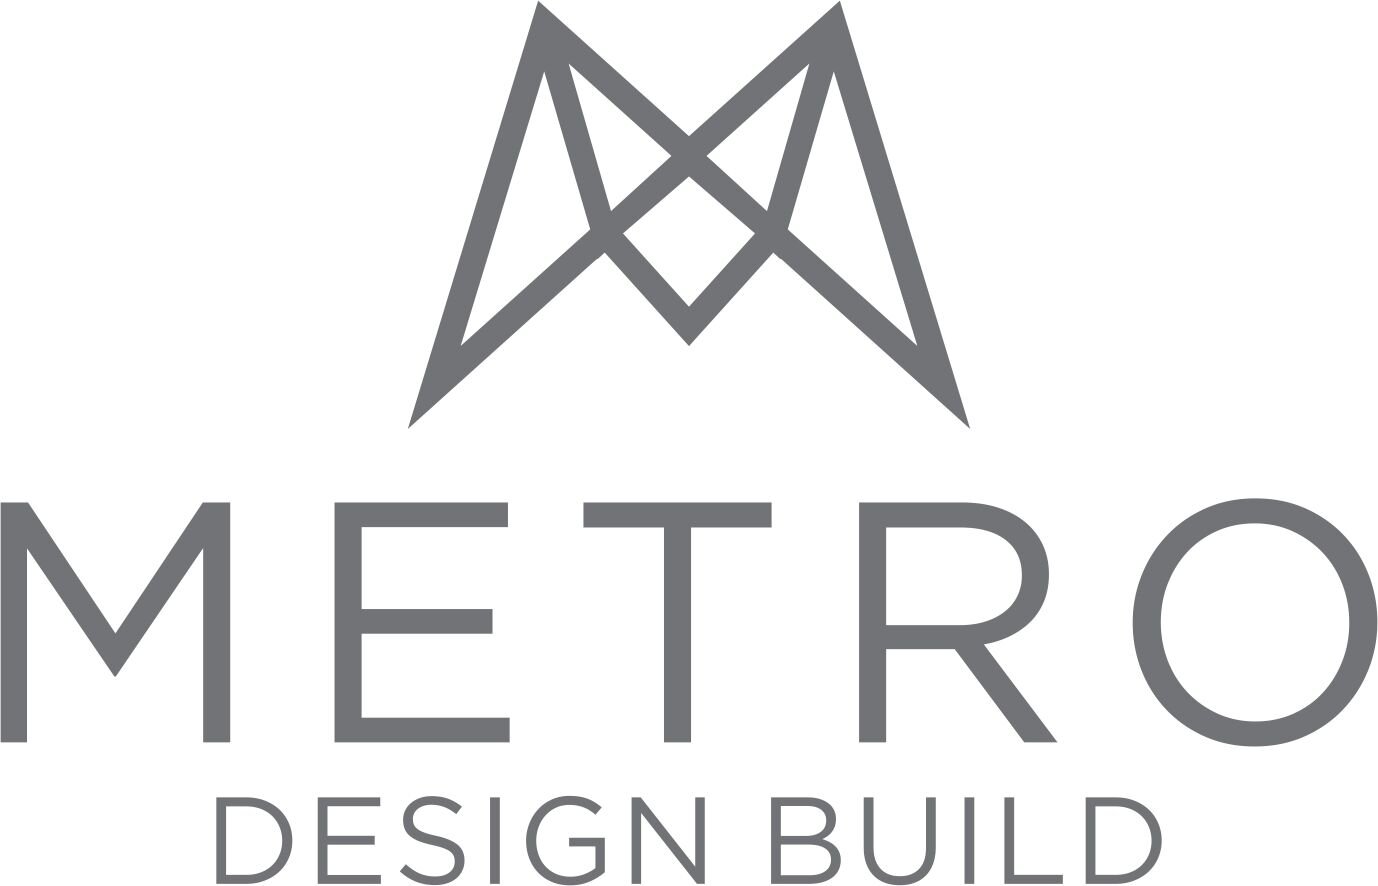 Metro Design Build Inc.